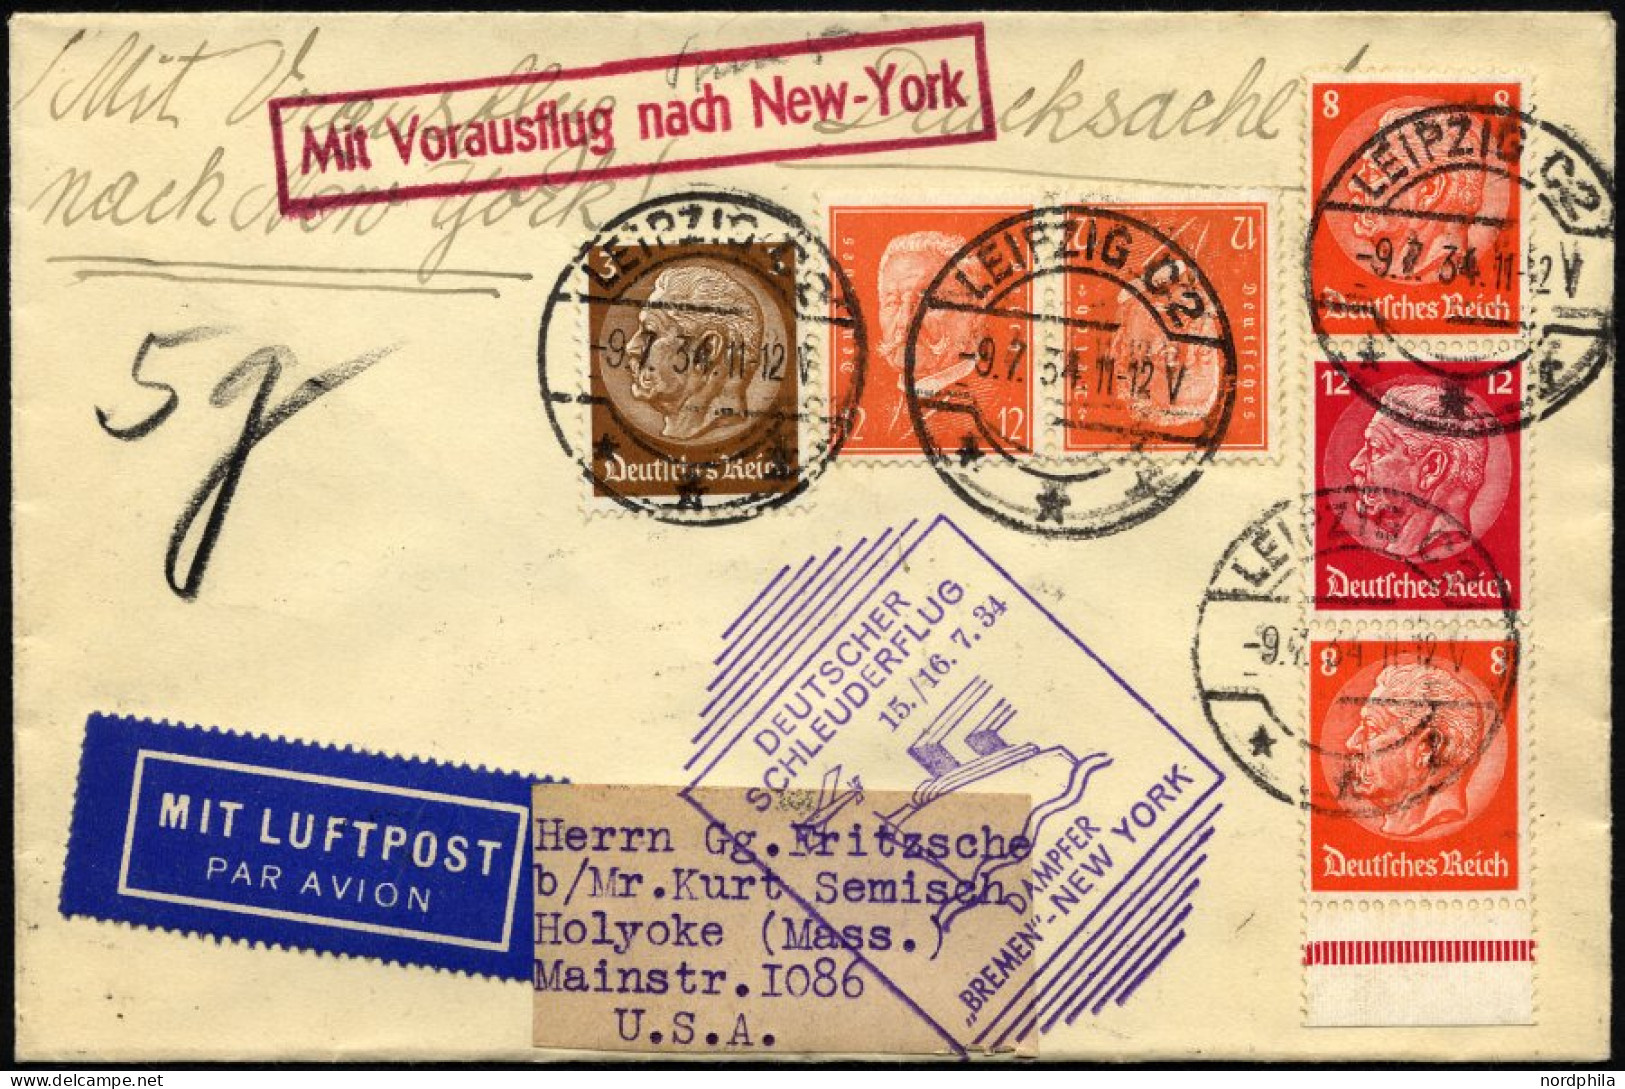 KATAPULTPOST 165a BRIEF, 15.7.1934, Bremen - New York, Landpostaufgabe, Frankiert U.a. Mit S 113, Drucksache Pracht - Covers & Documents